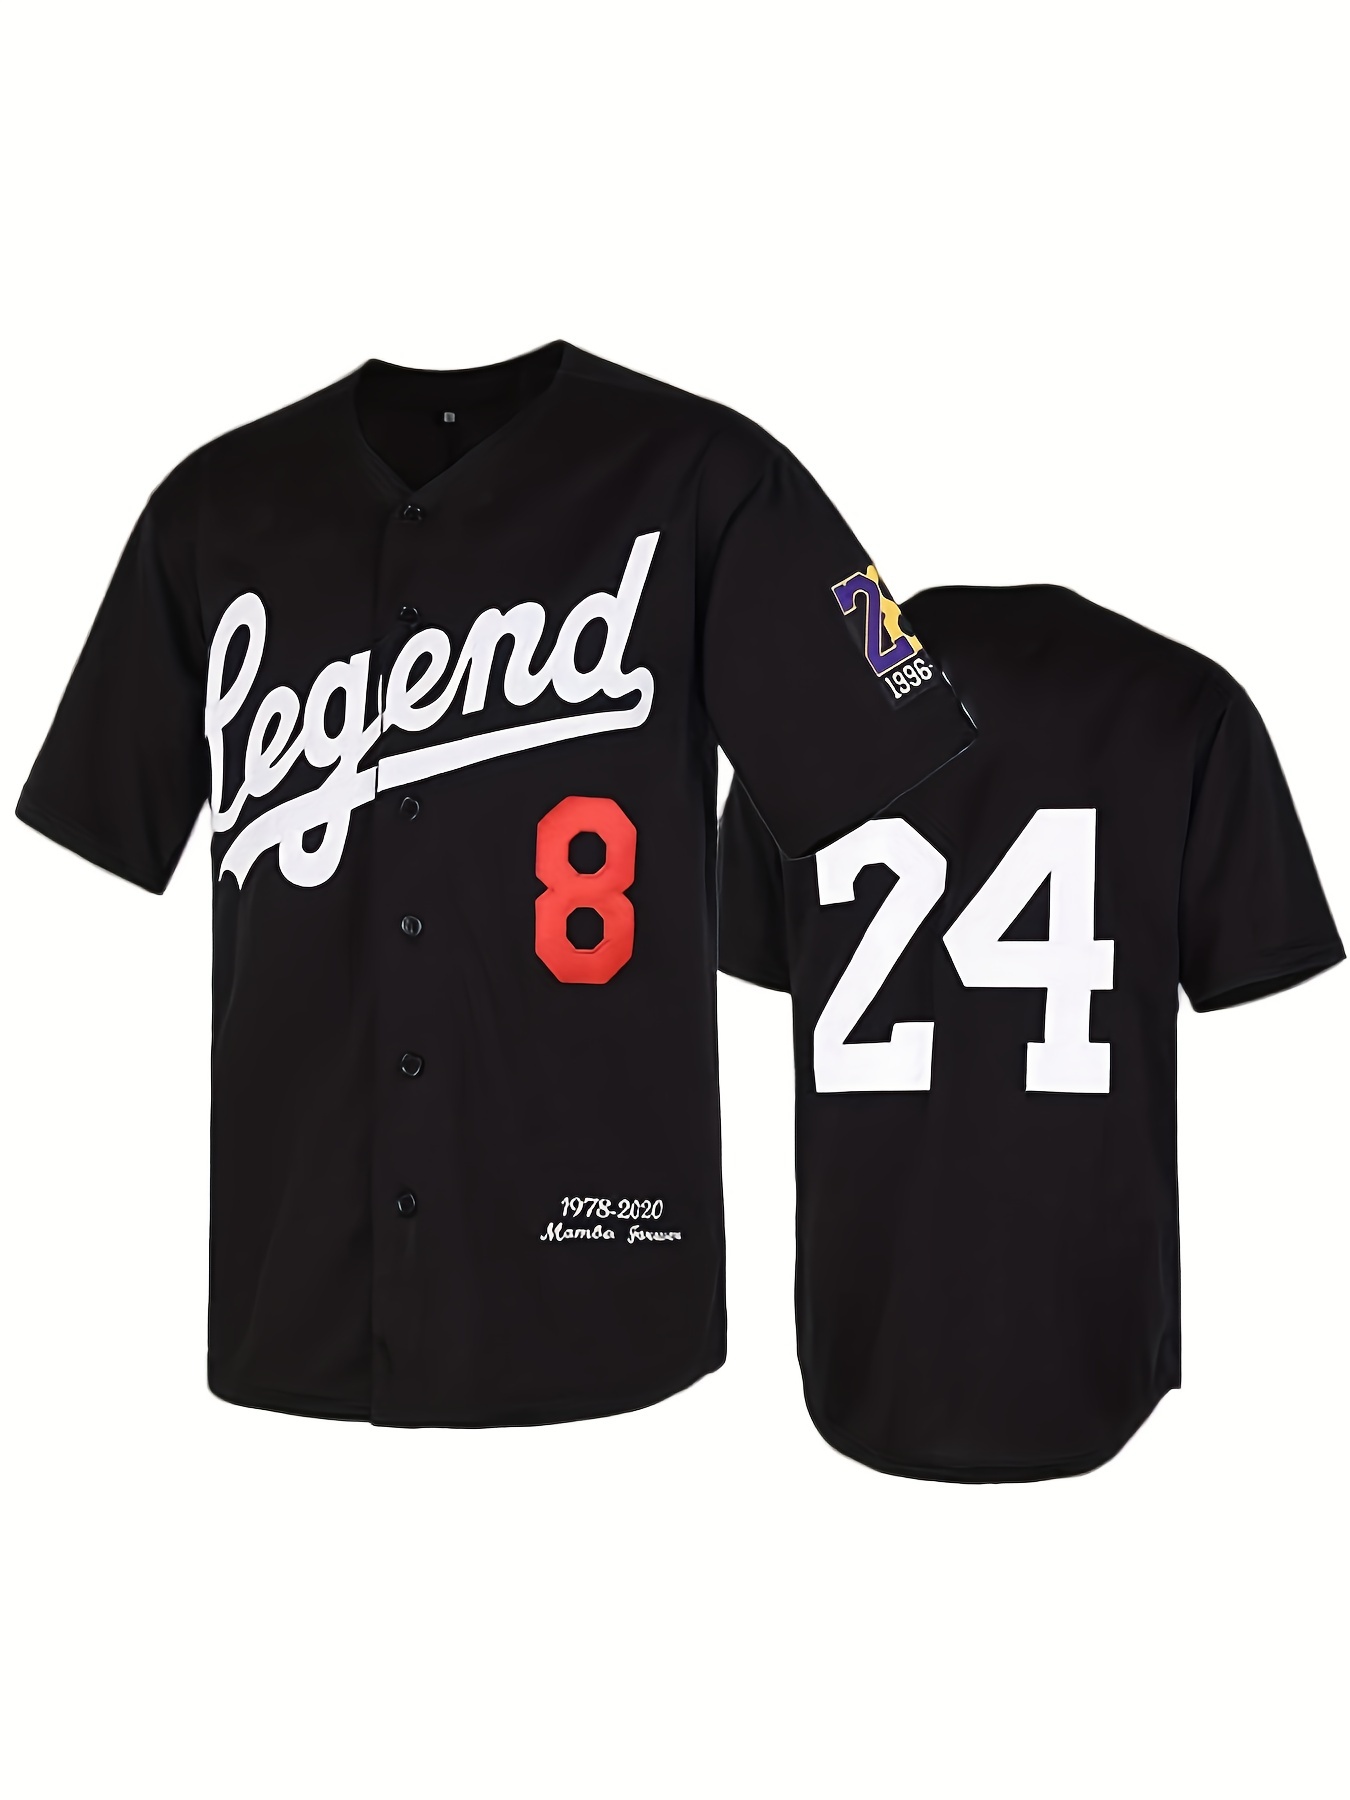 Las mejores ofertas en Los Angeles Dodgers Unisex Adulto camisetas